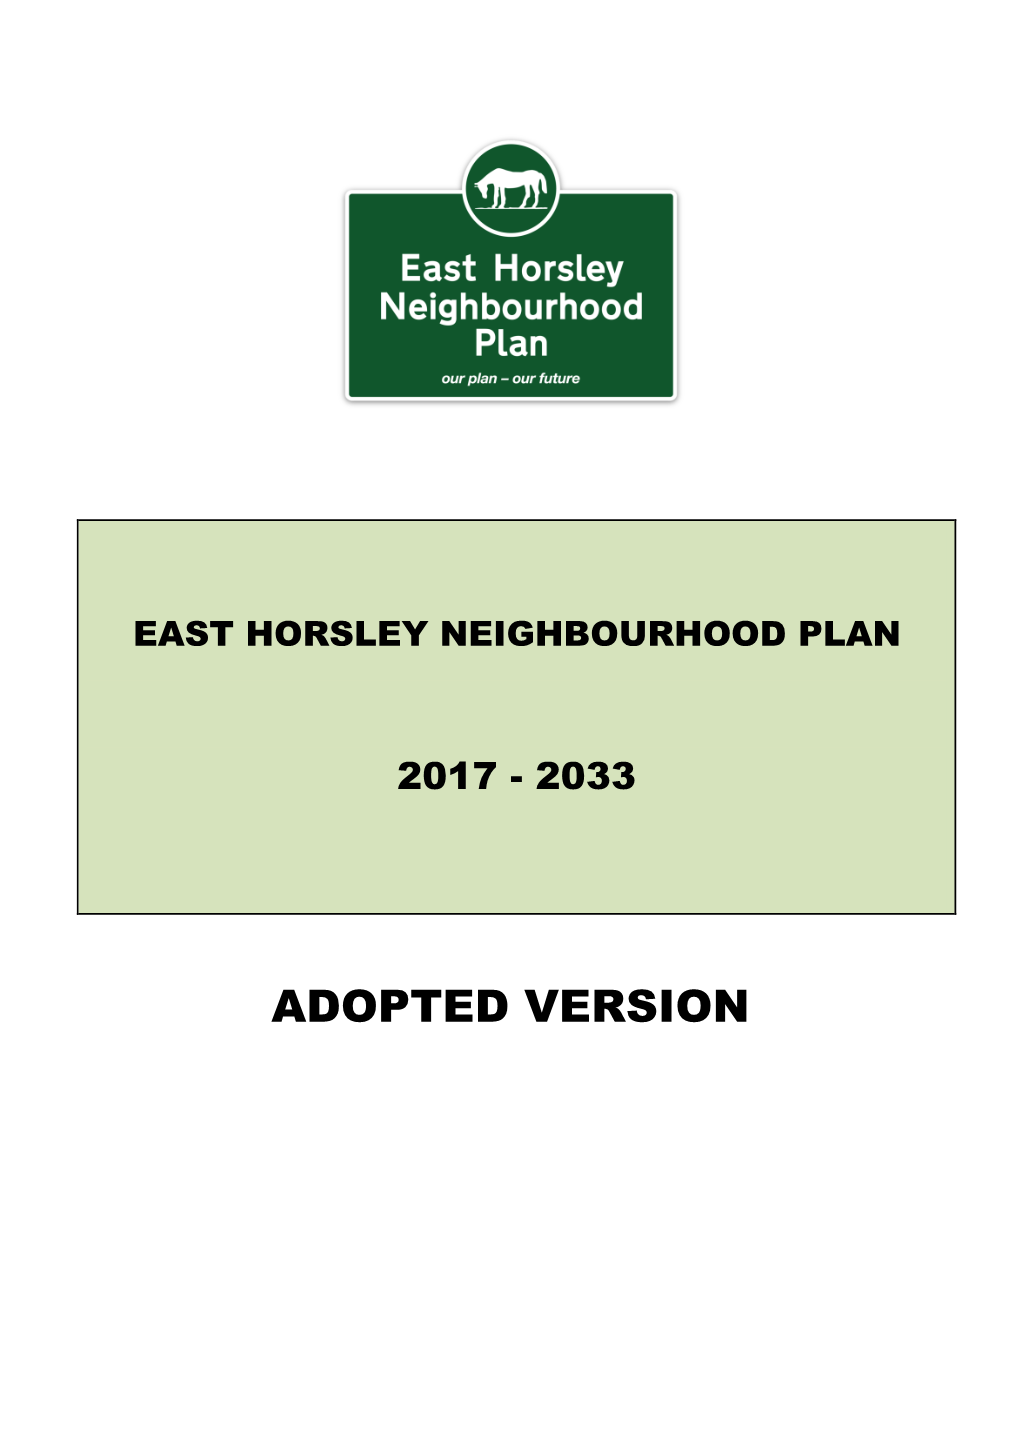 East Horsley Neighbourhood Plan